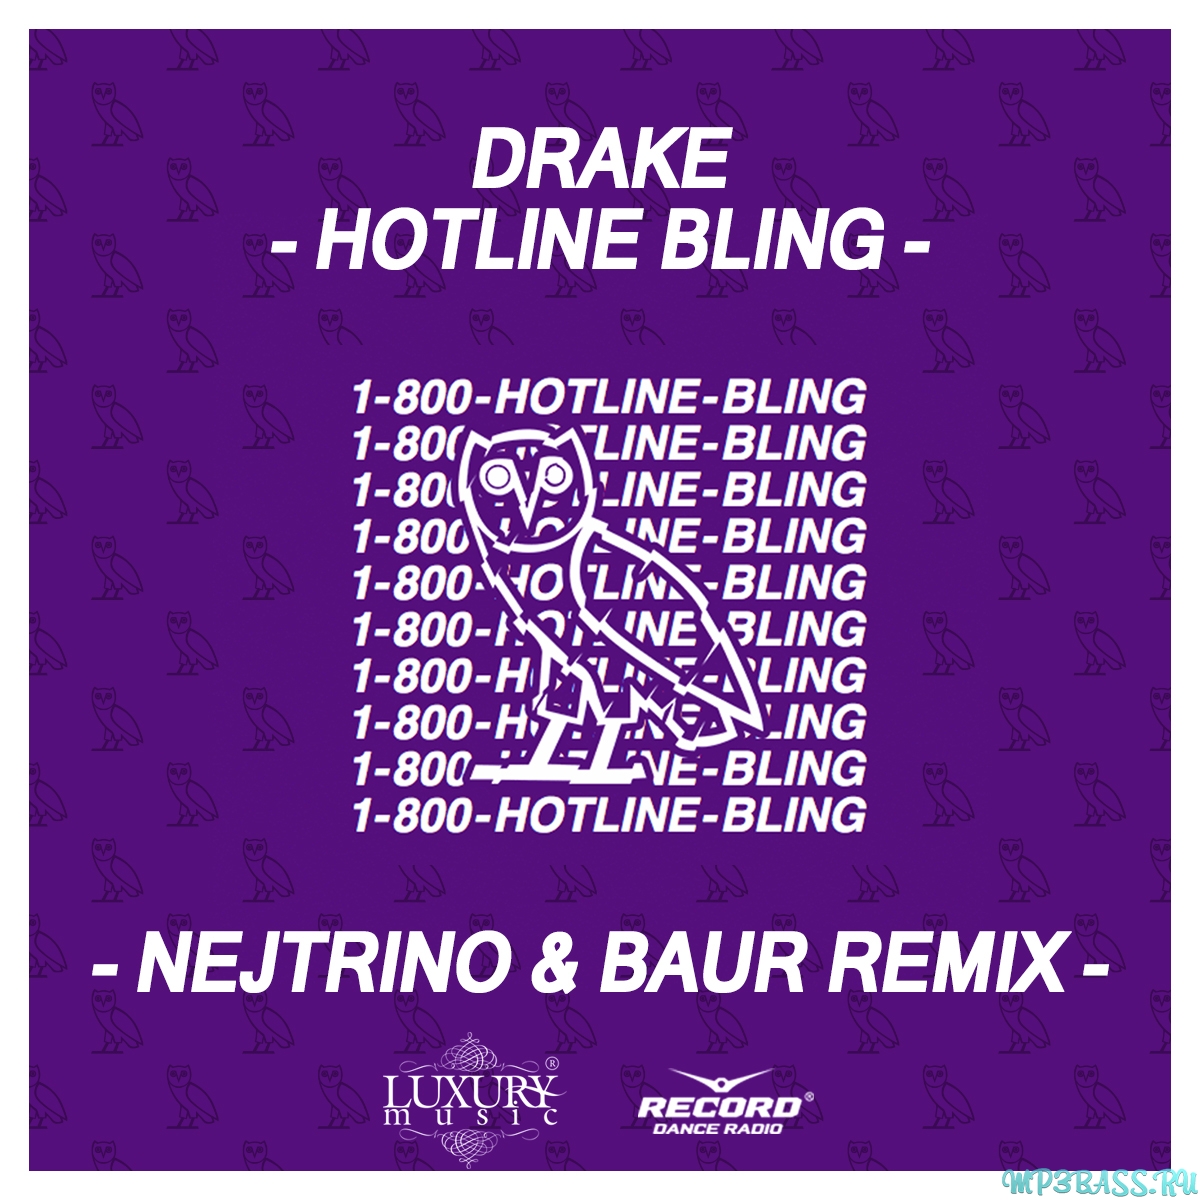 Радио luxury. Hotline Bling. Drake Hotline Bling. Drake Hotline Bling обложка. Hotline Bling Drake альбом.